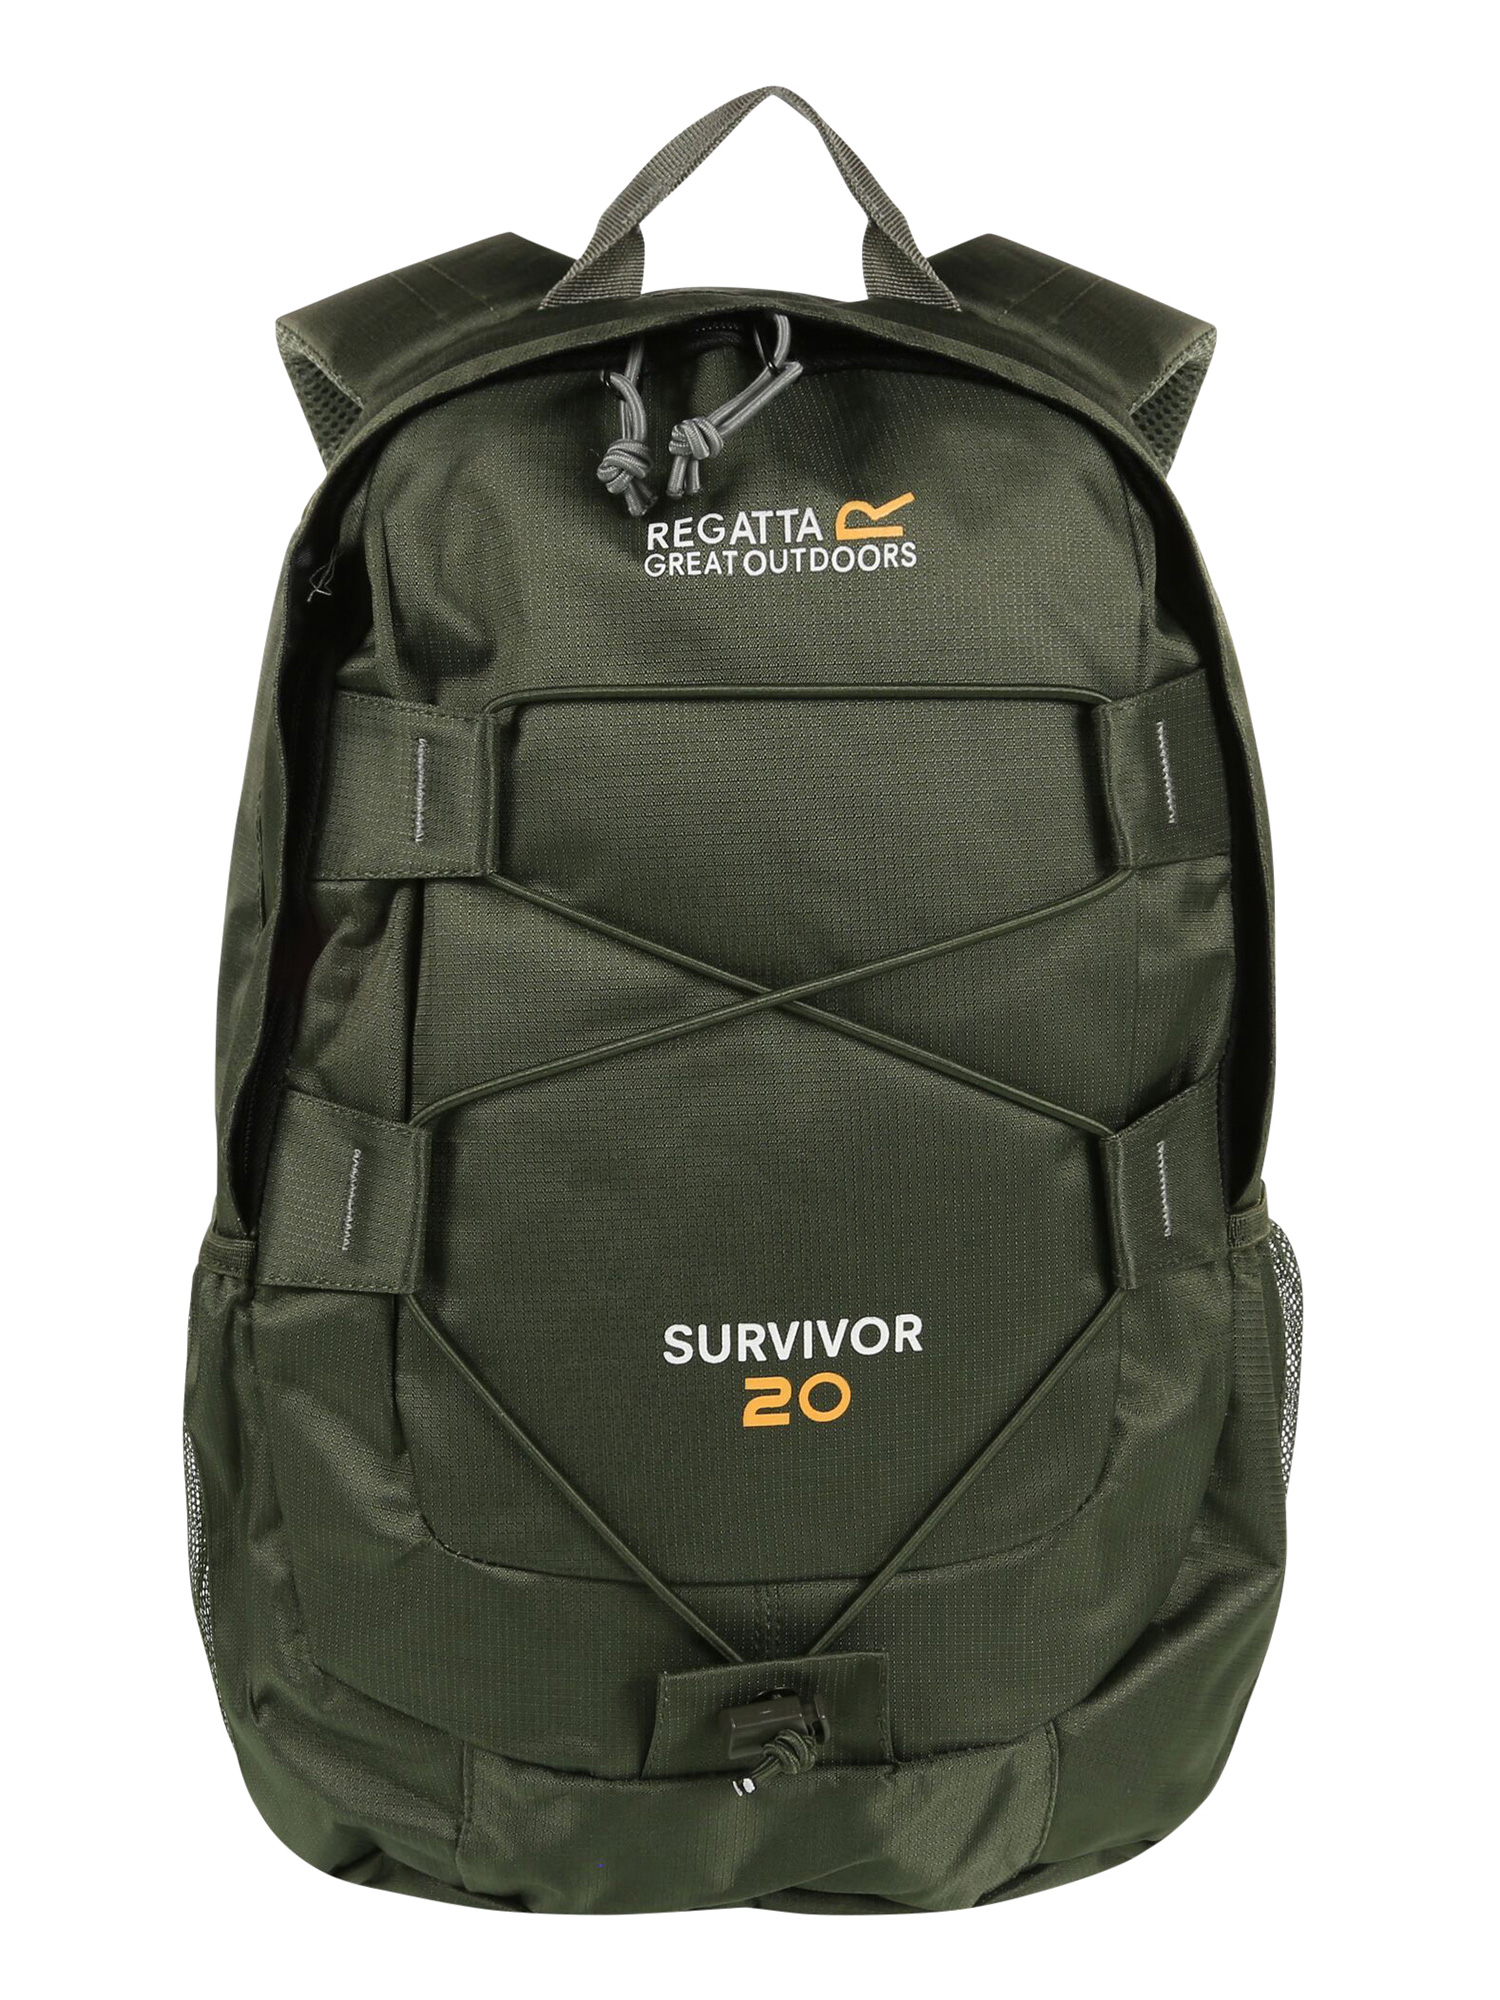 

Survivor III Backpack